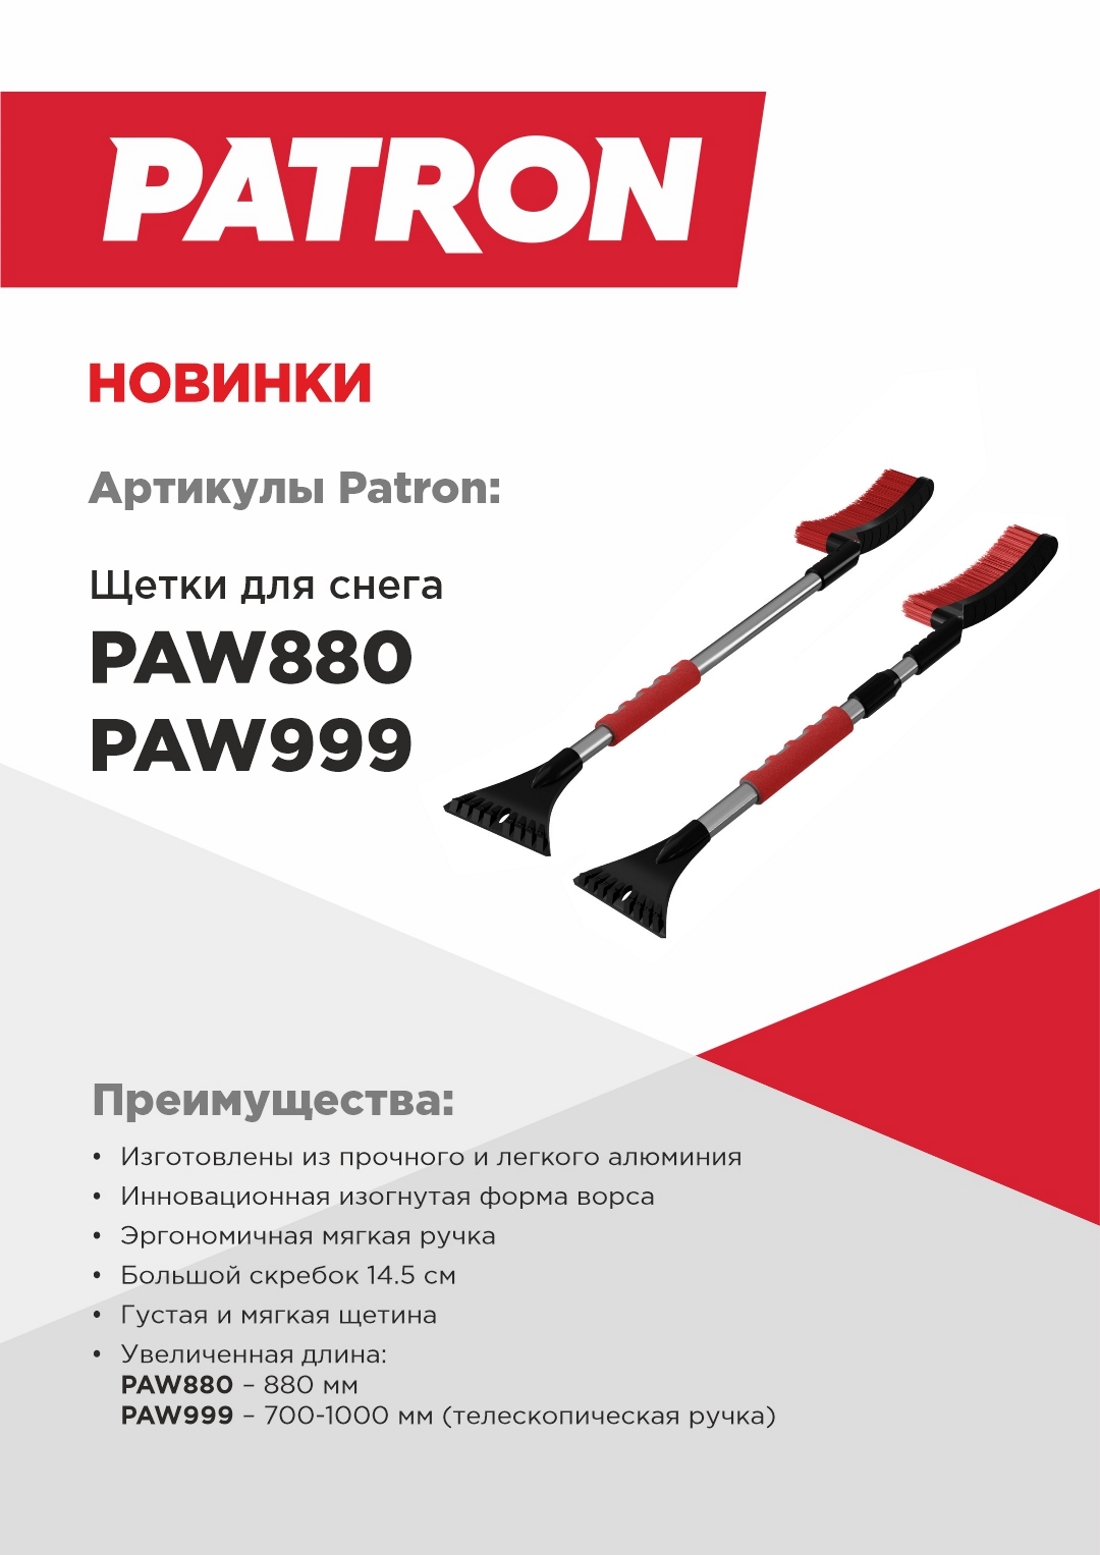 NEW_Patron_PAW880_PAW999_1